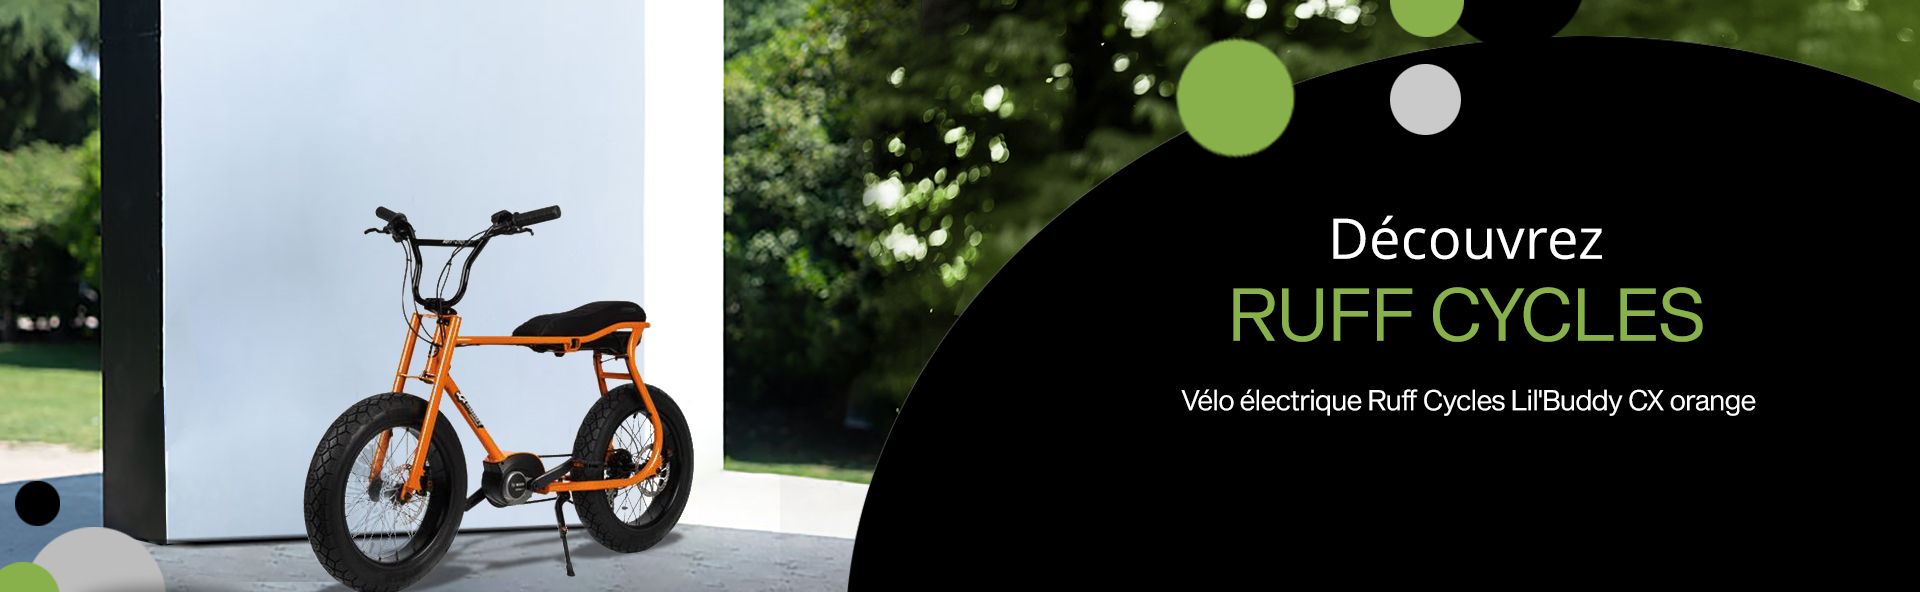 Cyclobike -vélo électrique à paris: ruff cycle